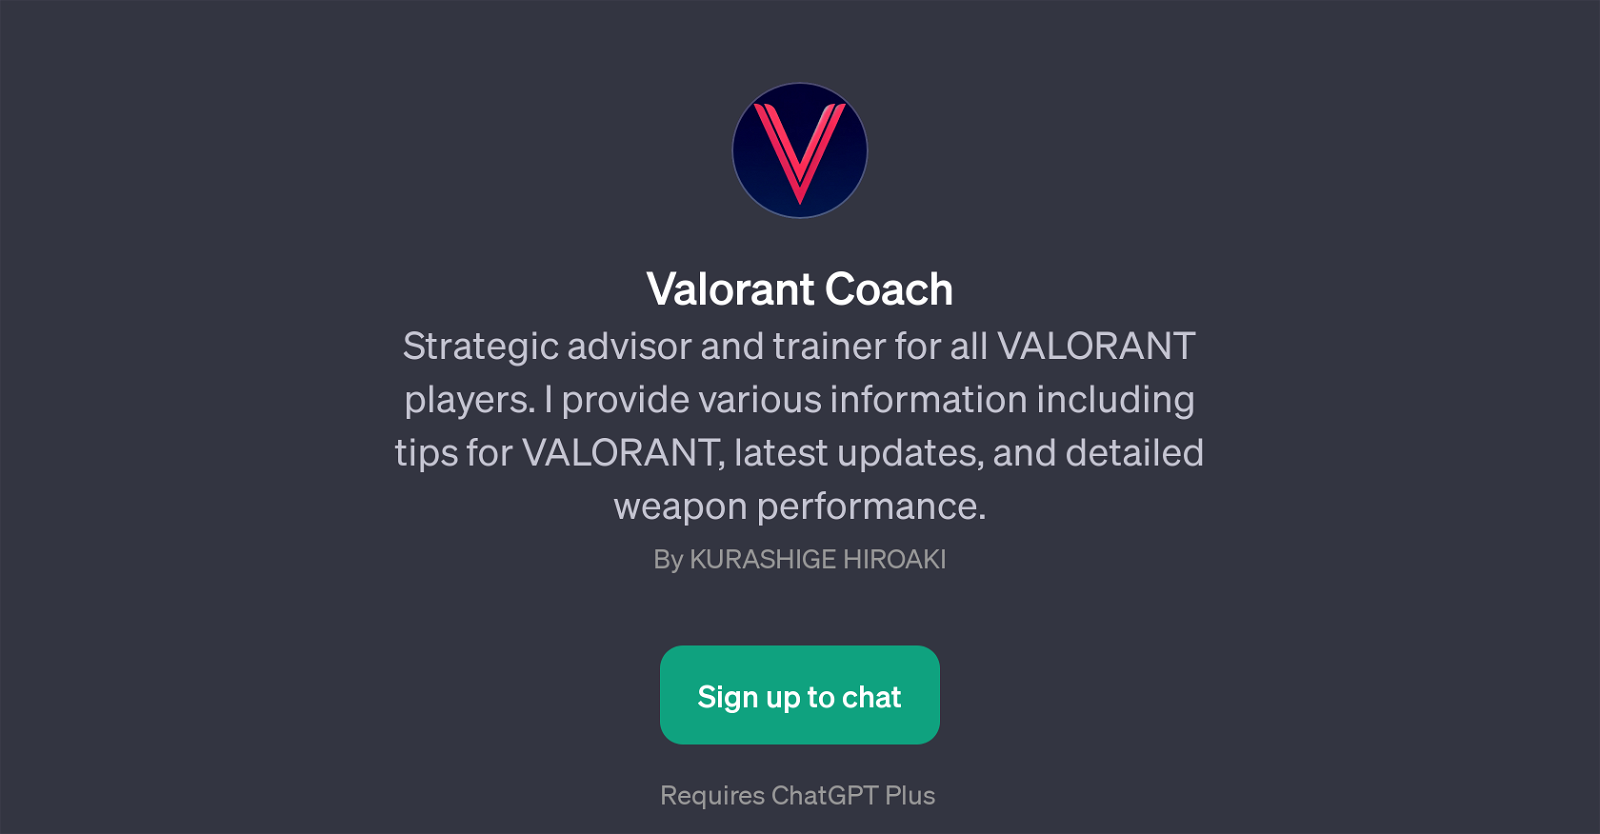 Valorant Coach website